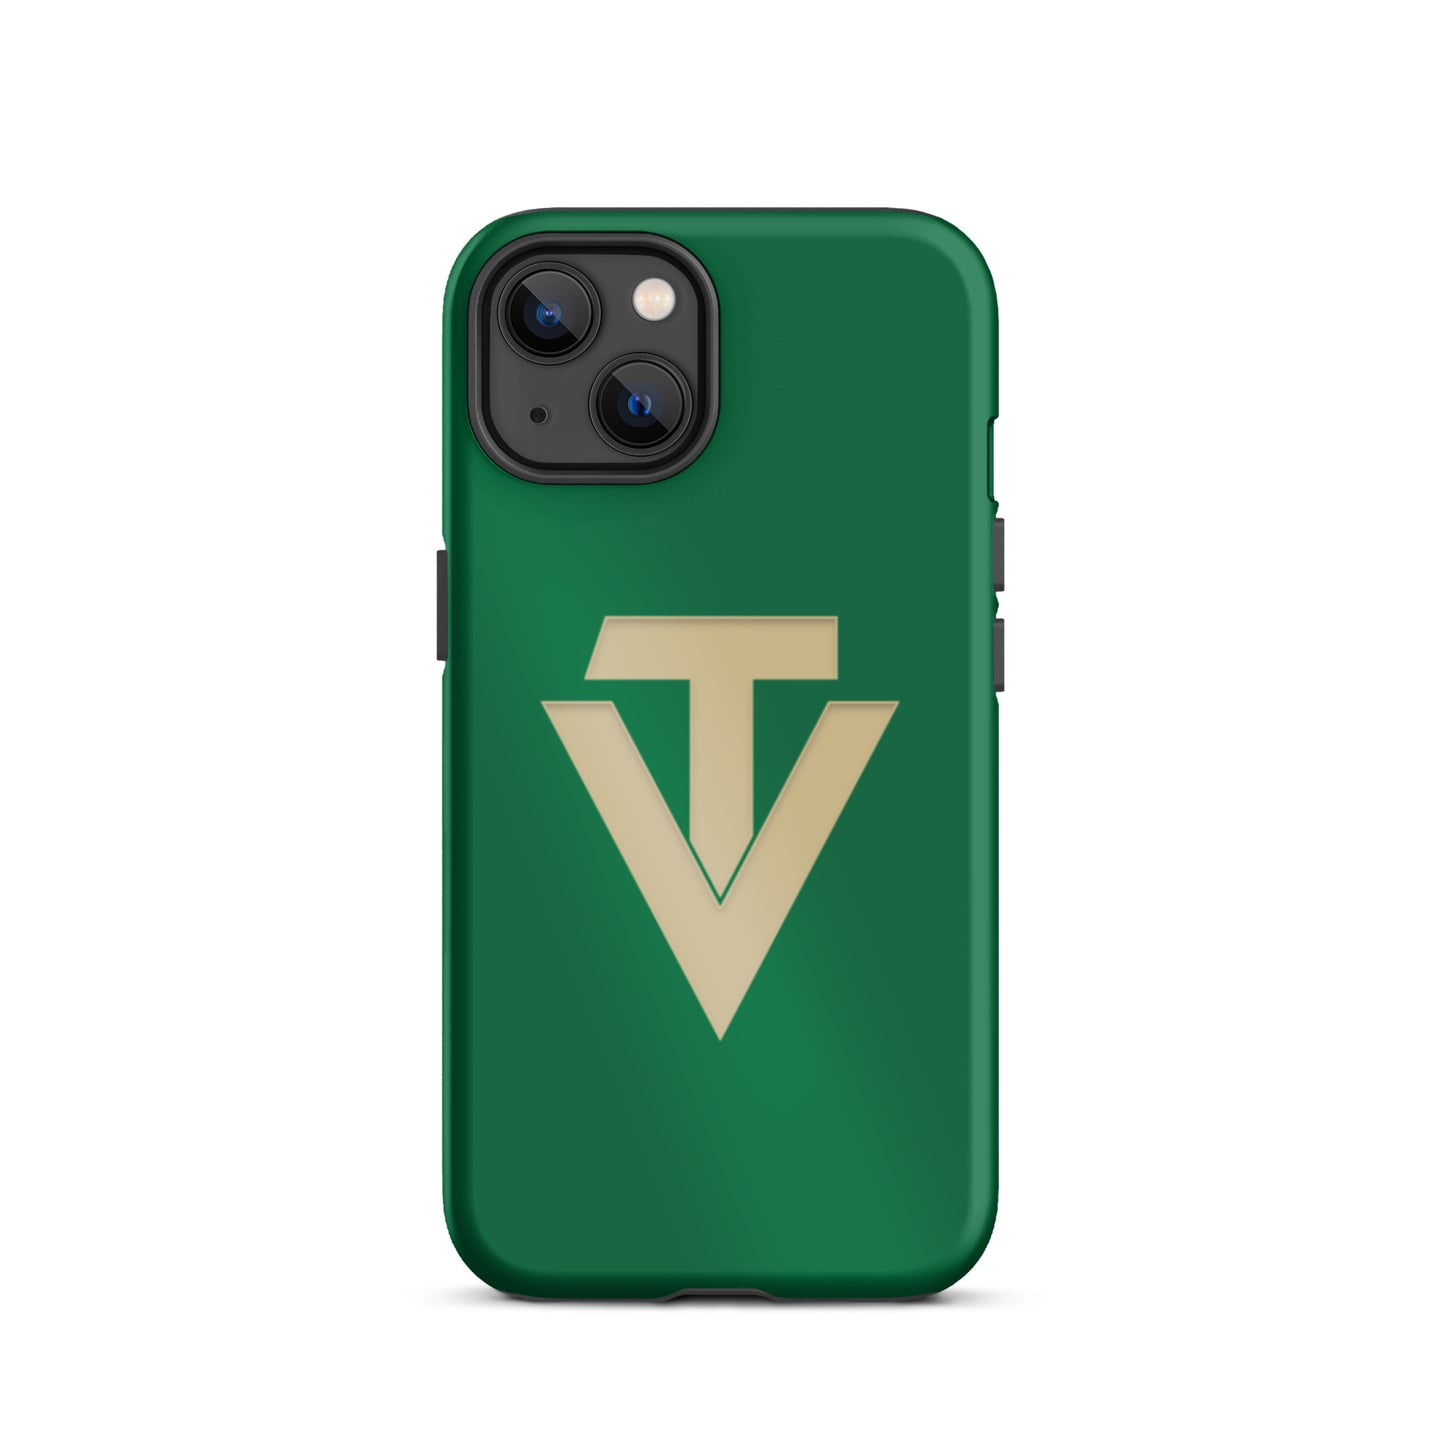 VT Tough iPhone case